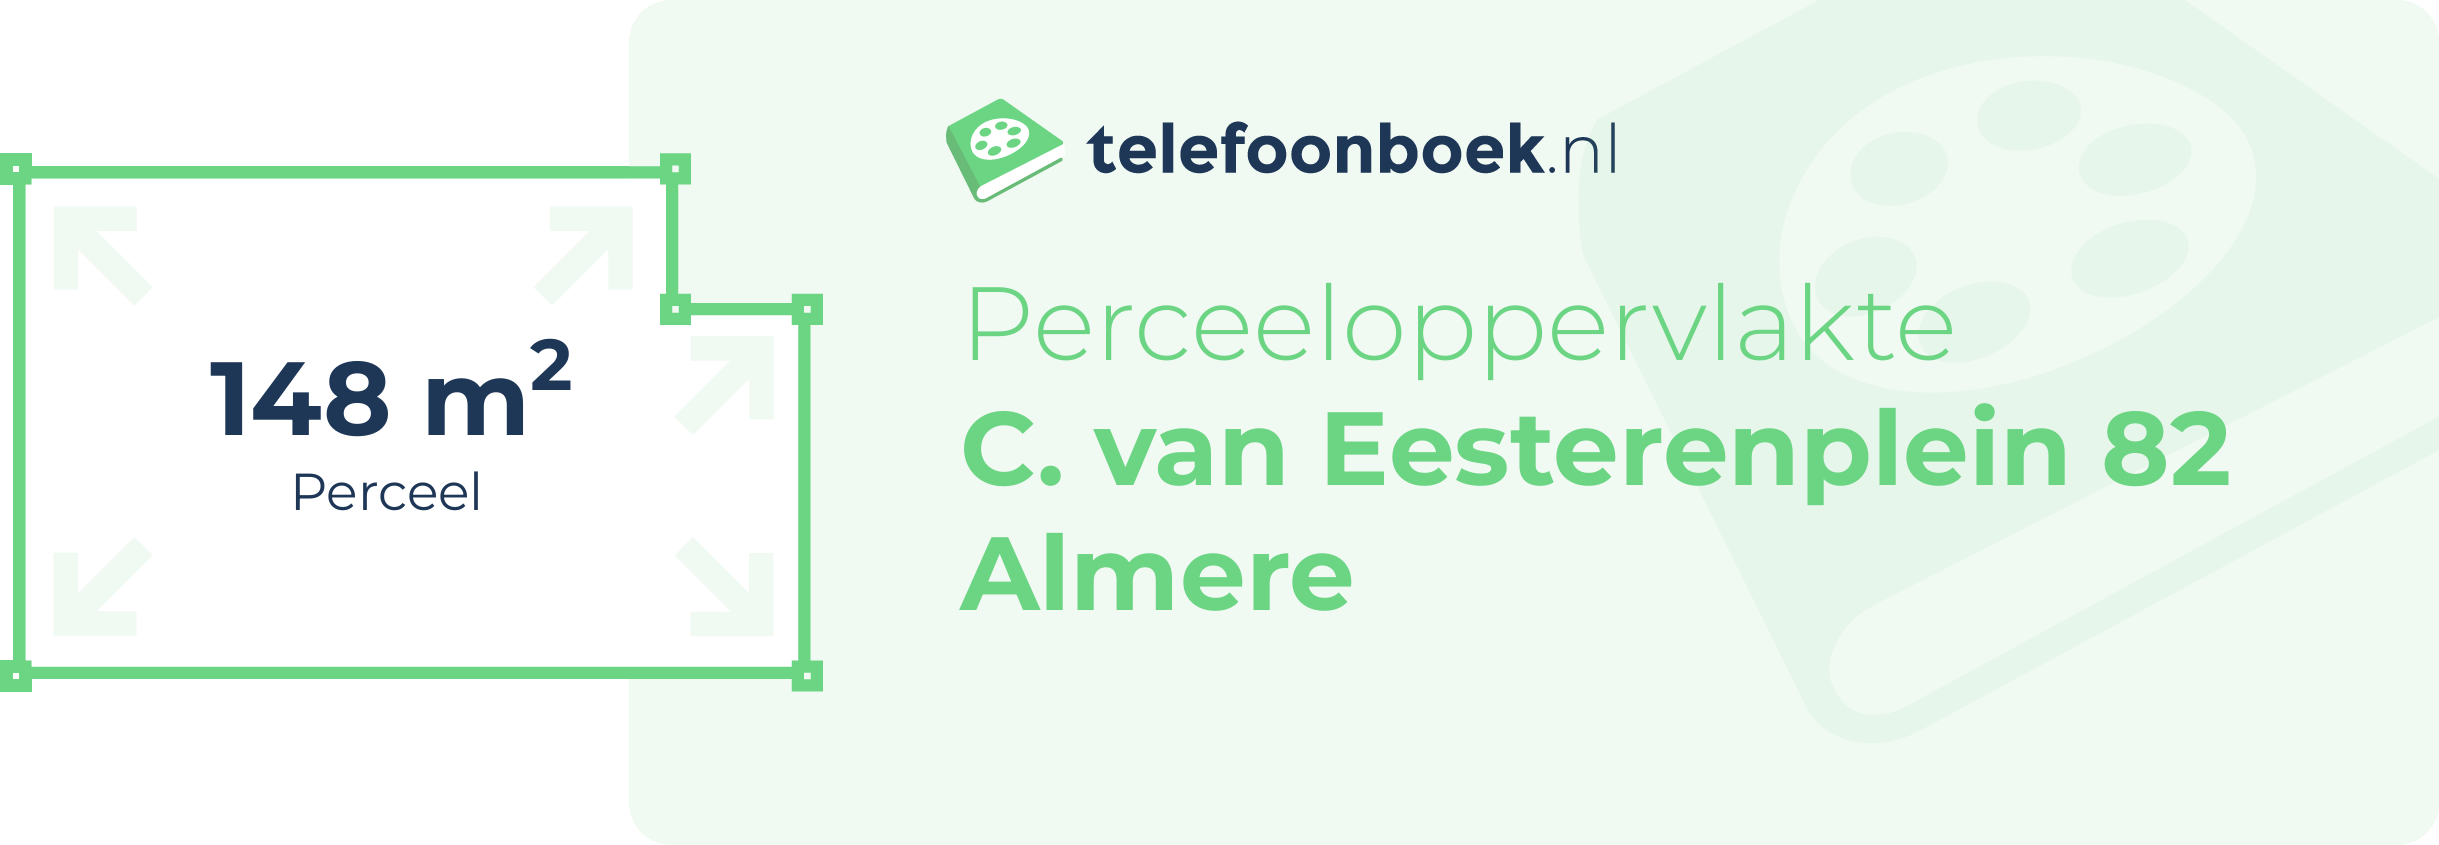 Perceeloppervlakte C. Van Eesterenplein 82 Almere